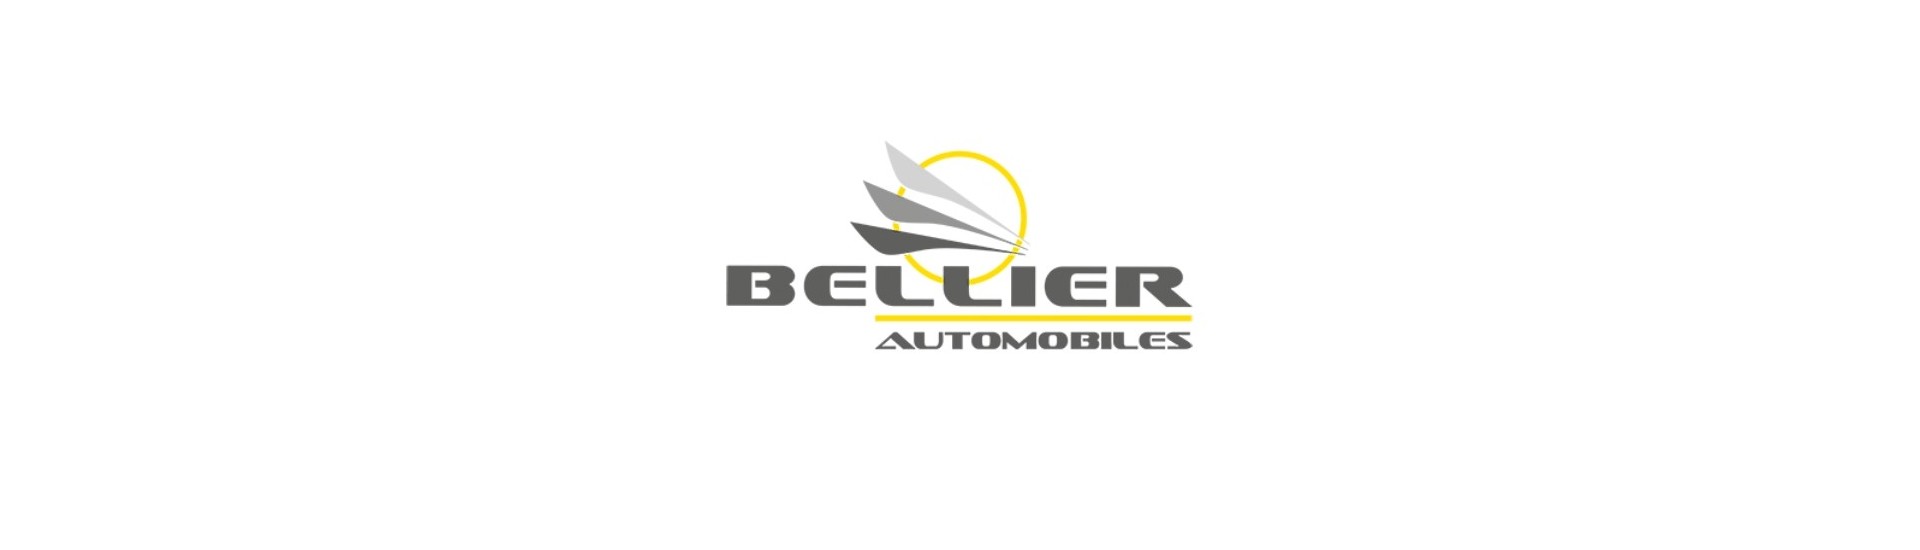 Commodo till bästa pris för bilar utan tillstånd Bellier